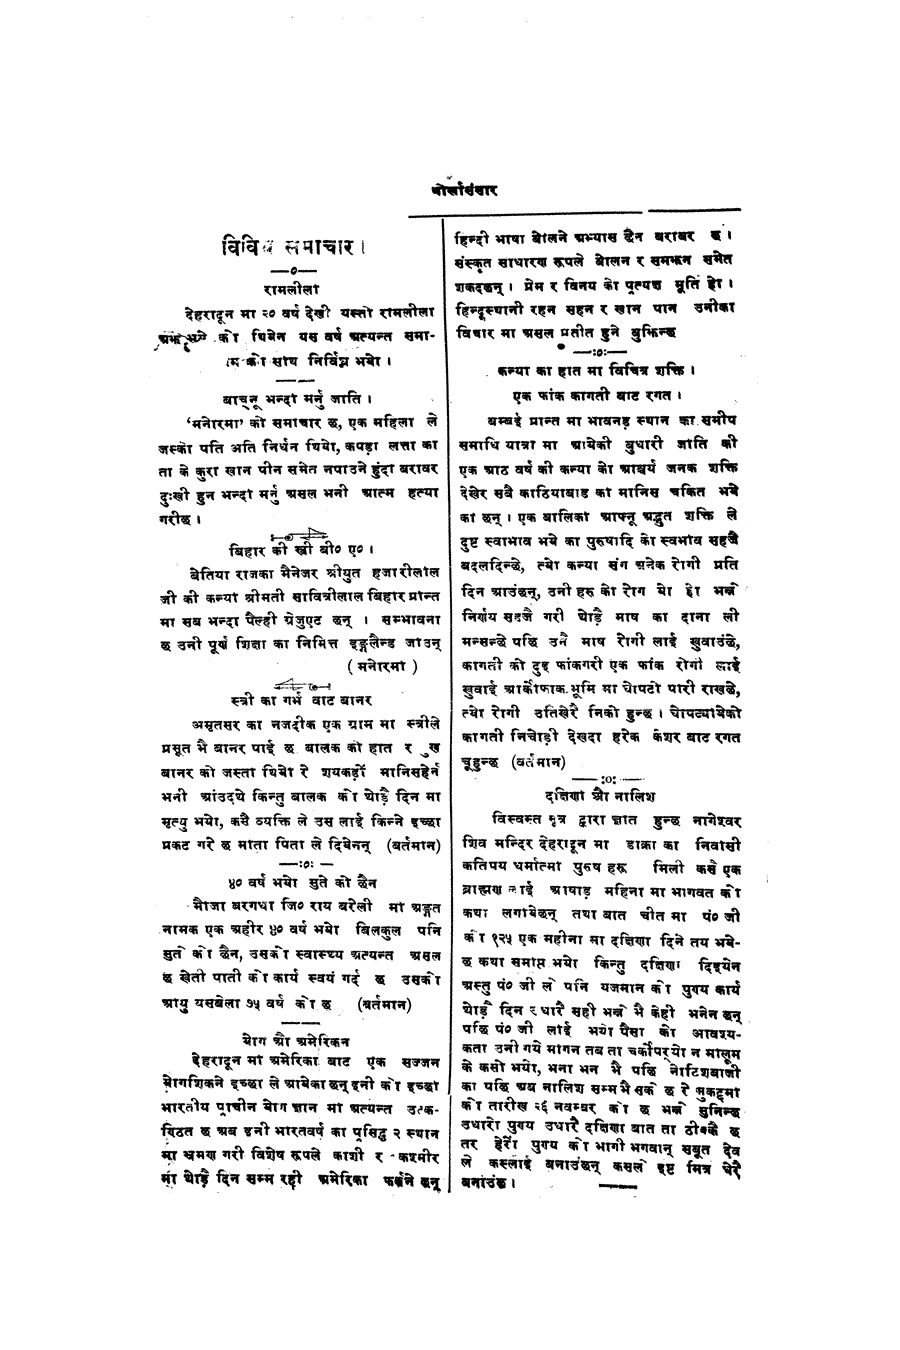 Gorkha Sansar, 4 Nov 1926, page 2